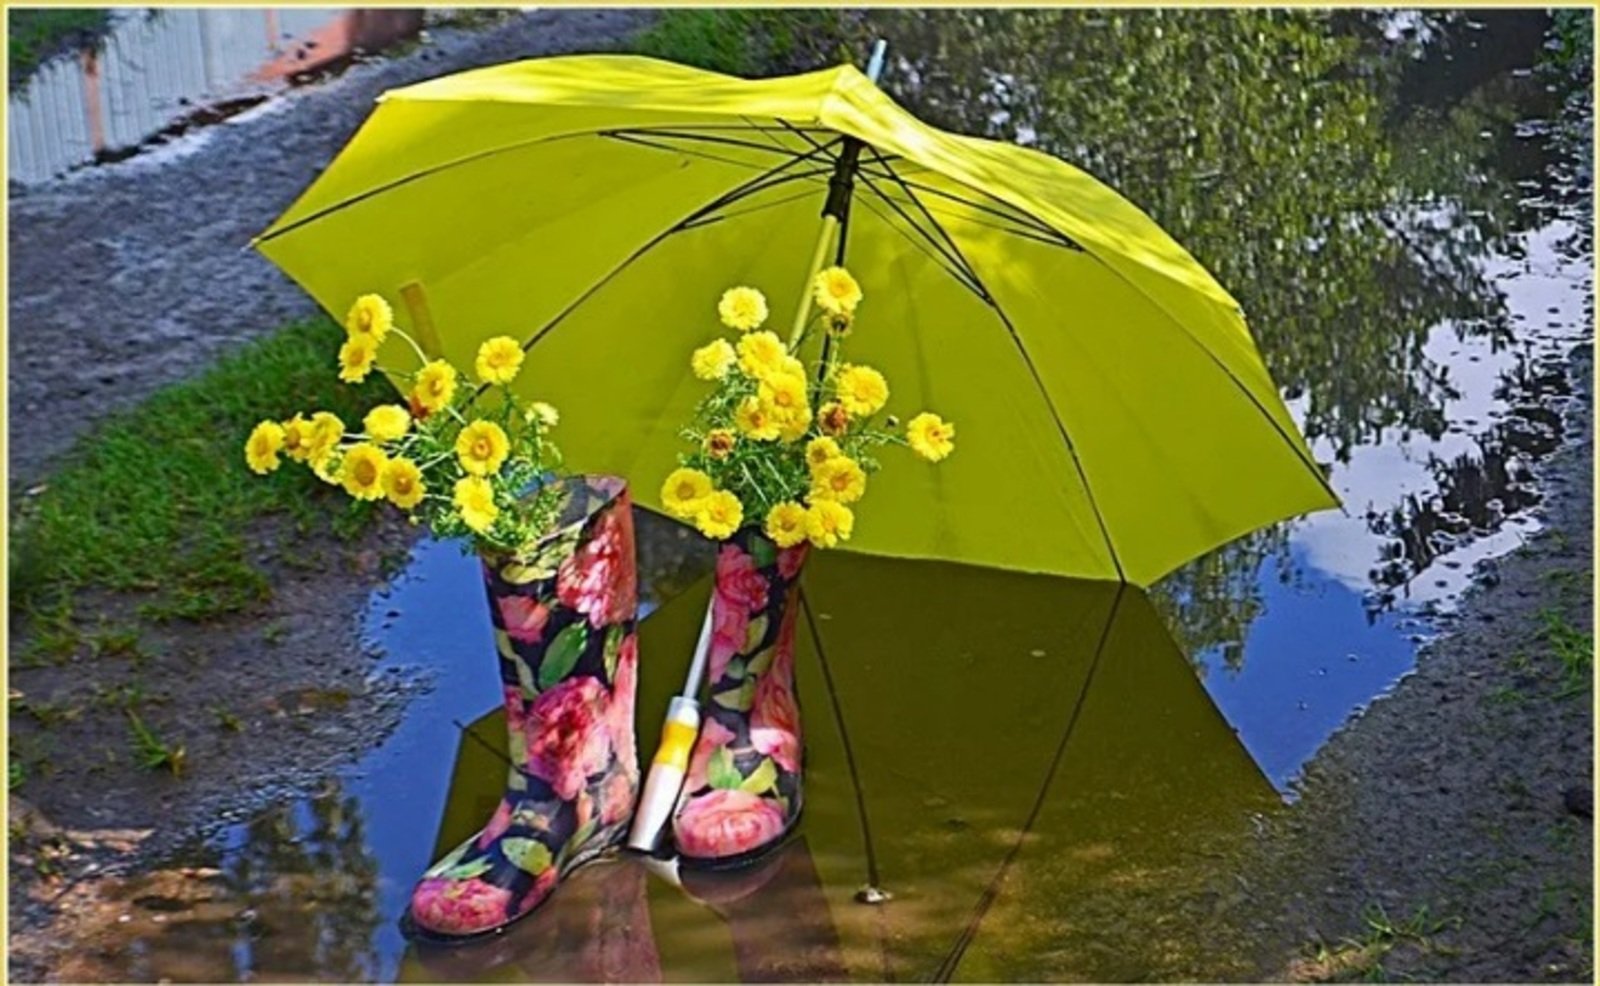 Забыли зонтик. Летний зонтик. Красивые зонтики. Растение зонтик. Цветы в зонтике.